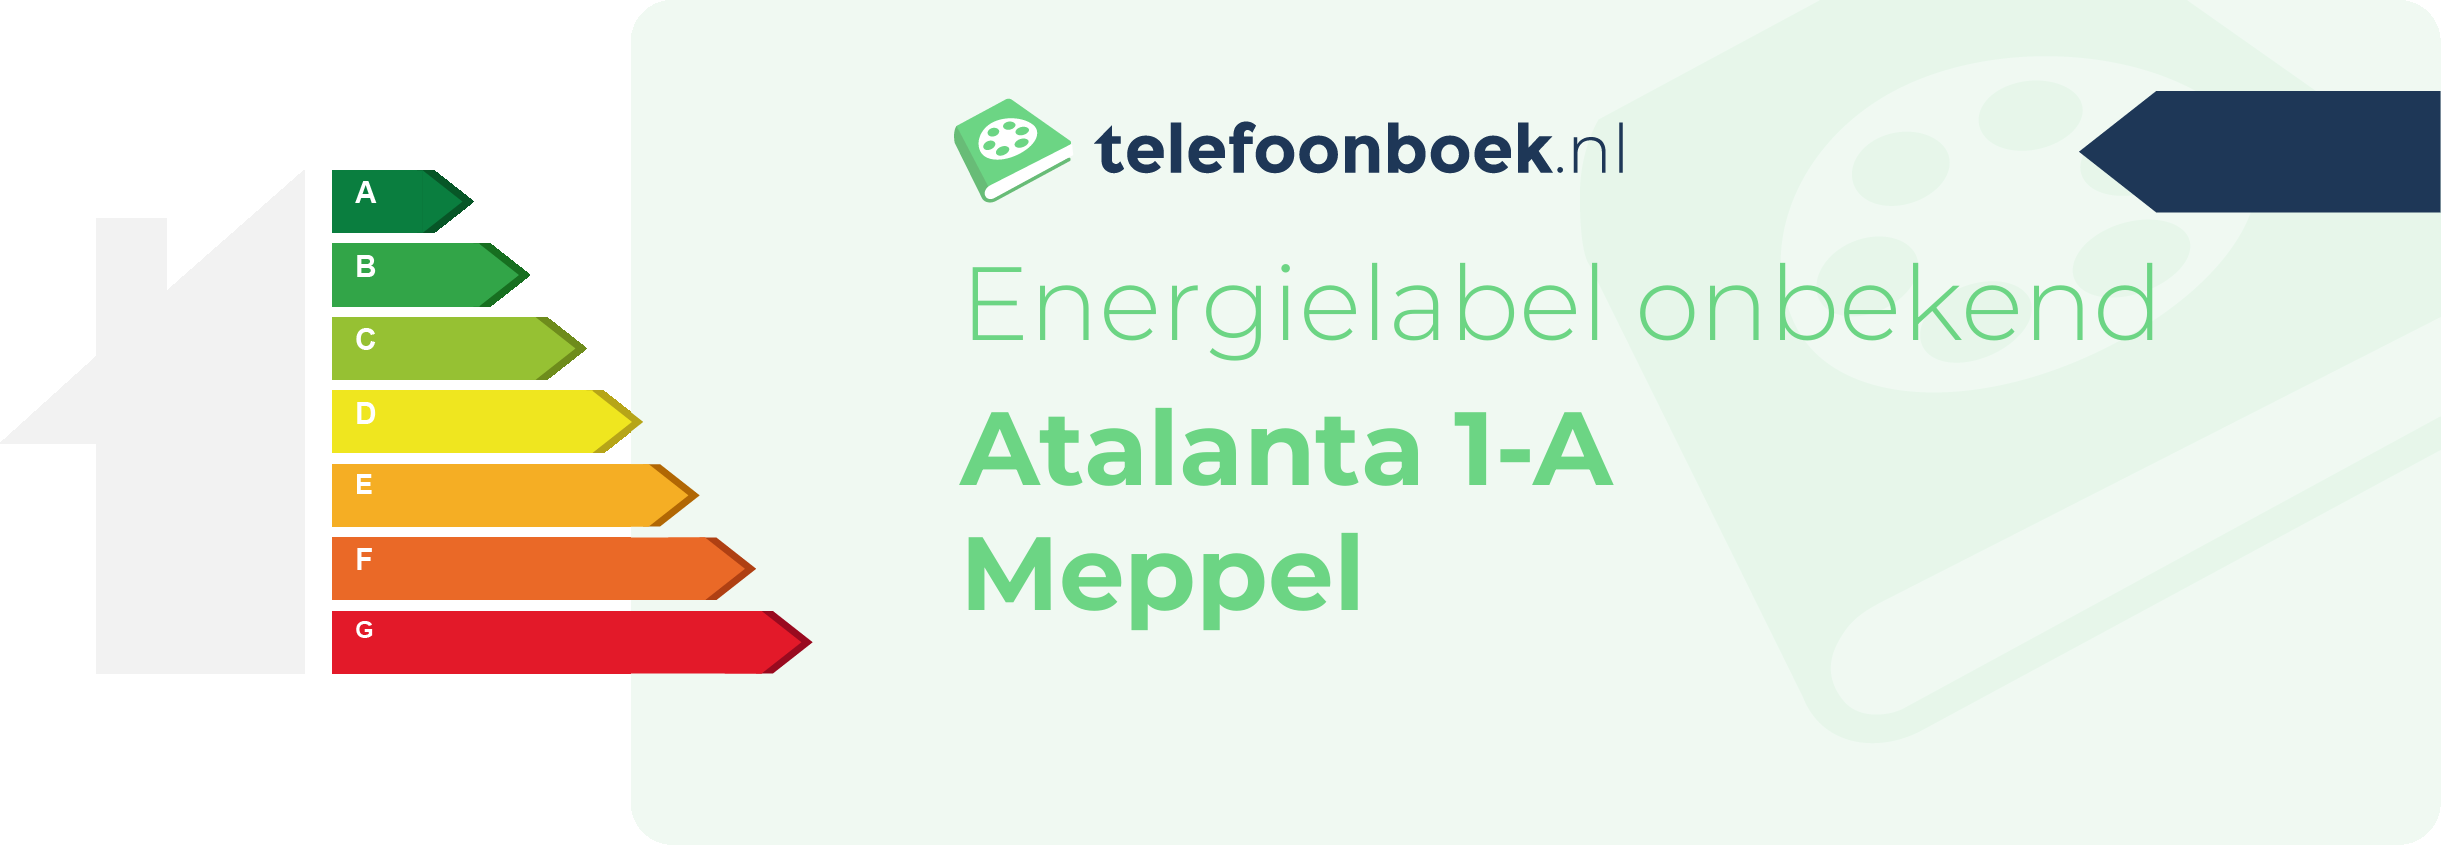 Energielabel Atalanta 1-A Meppel